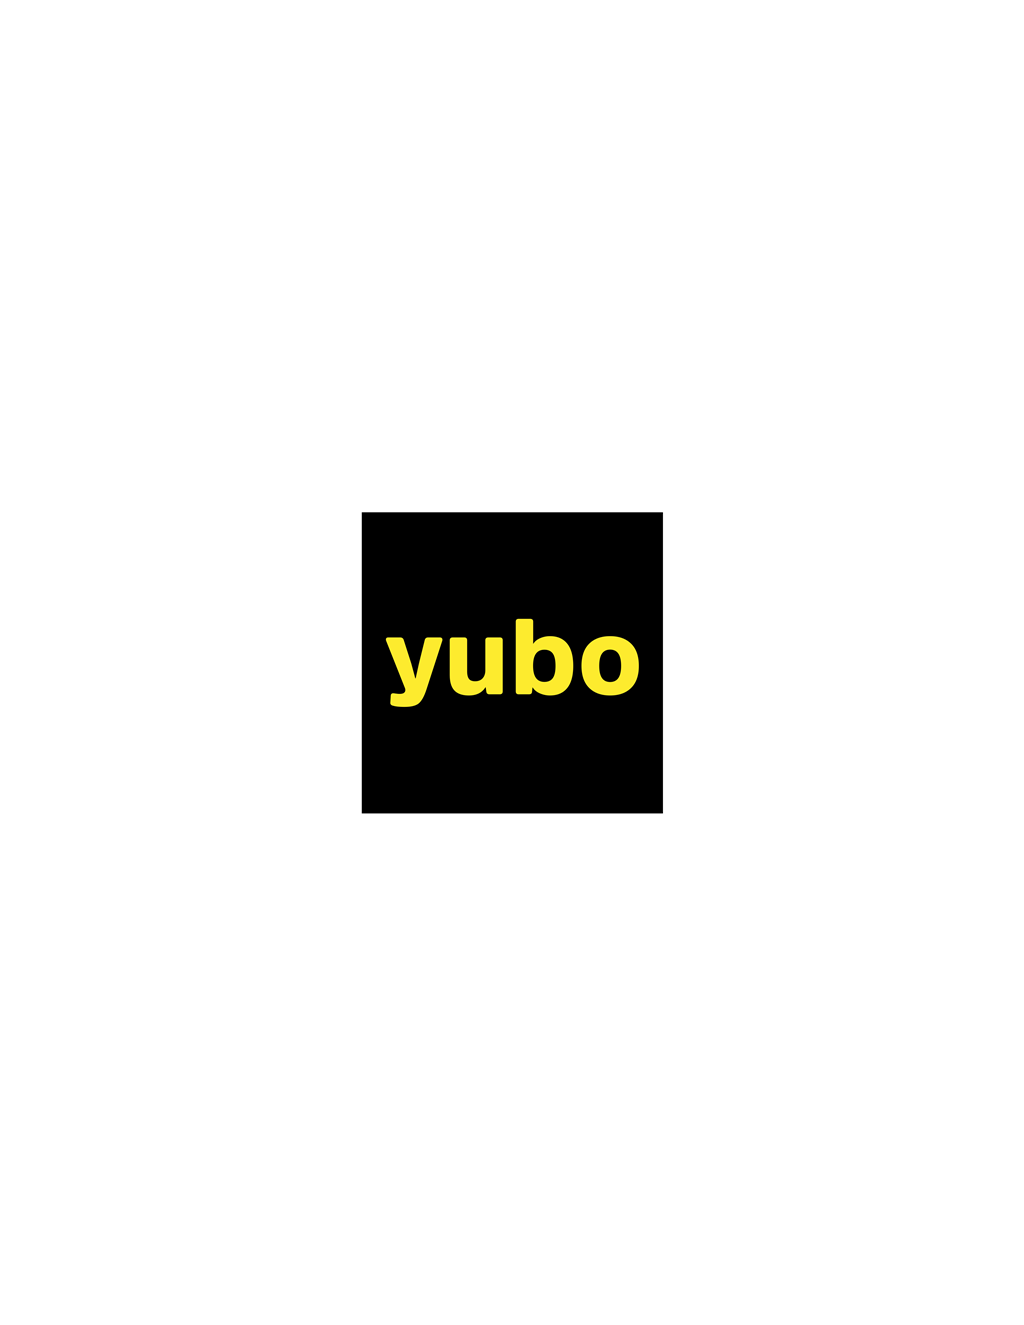 Yubo logotype, transparent .png, medium, large